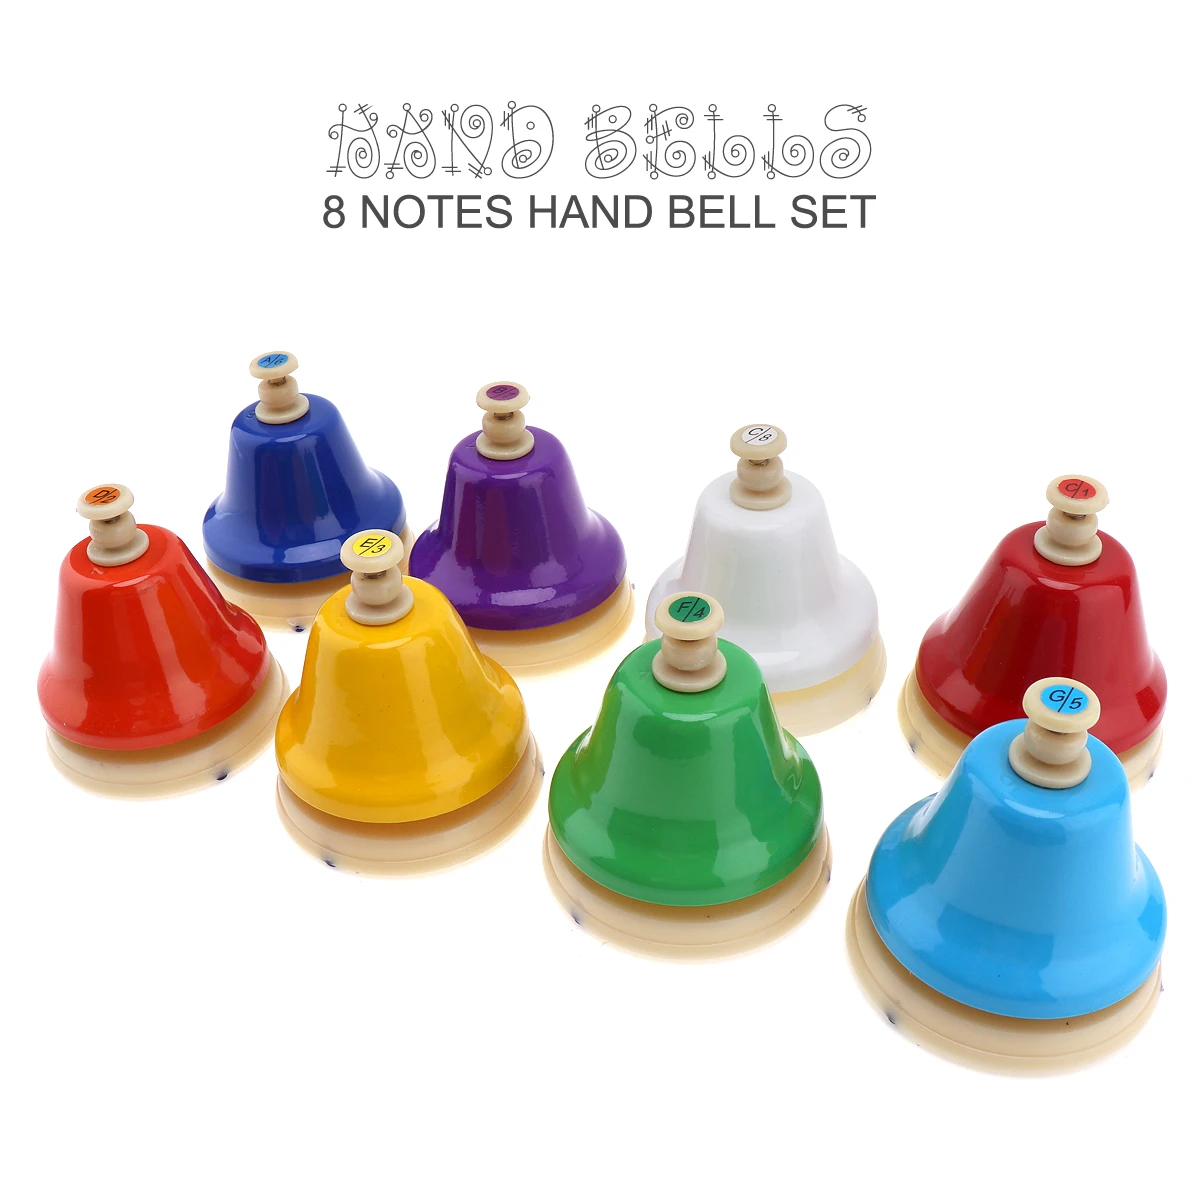 Tanio 8 uwaga kolorowy dzwonek ręczny zestaw Instrument sklep